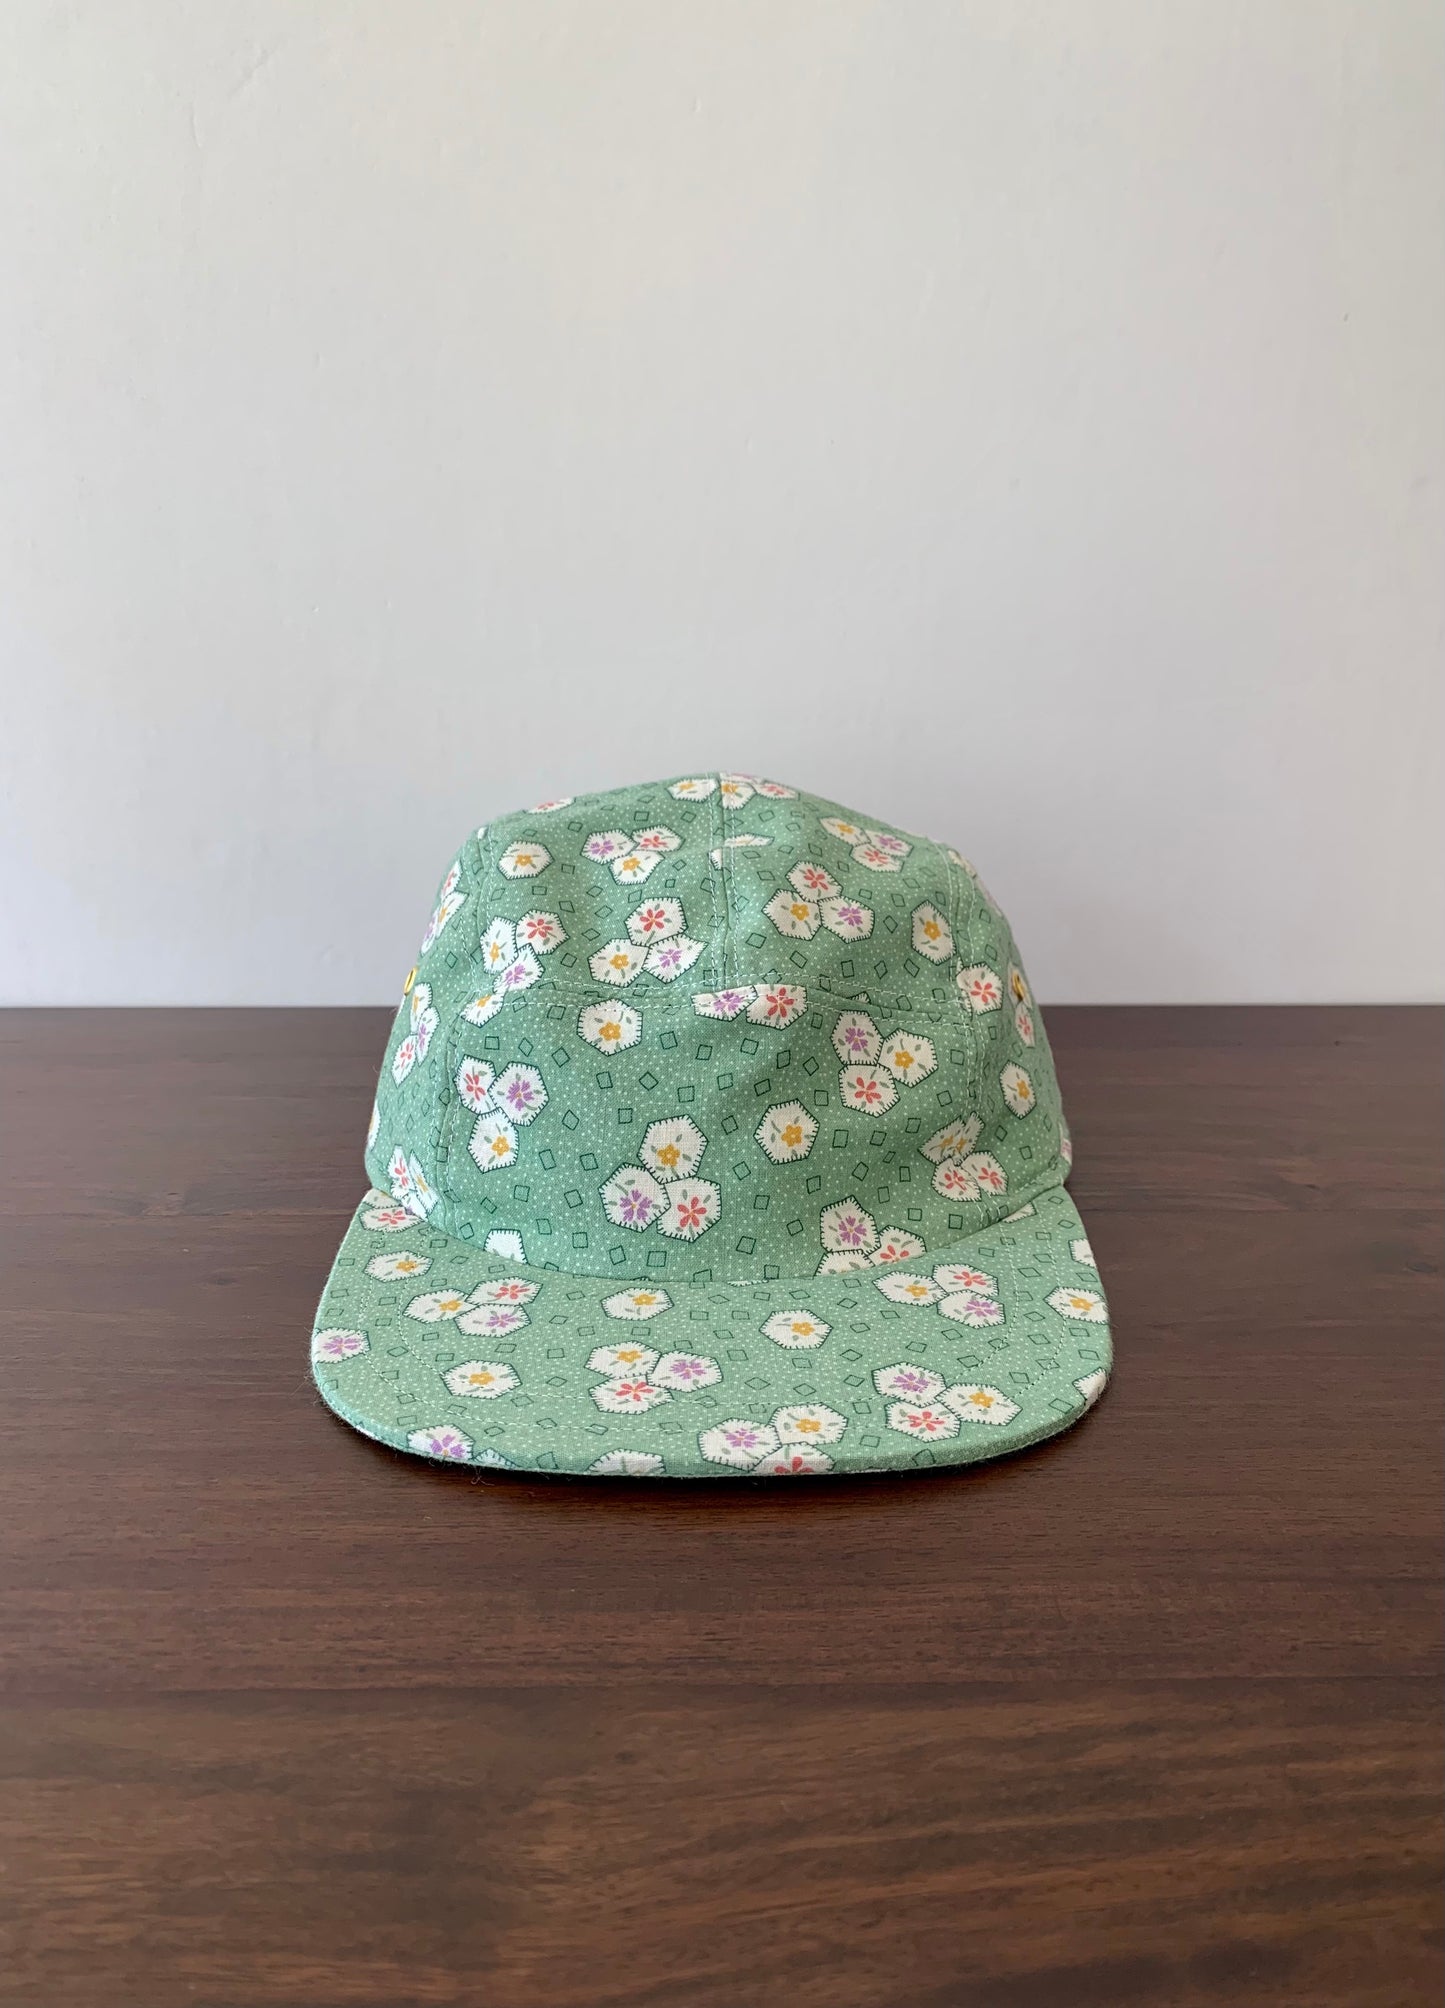 Vintage green floral 5-panel hat